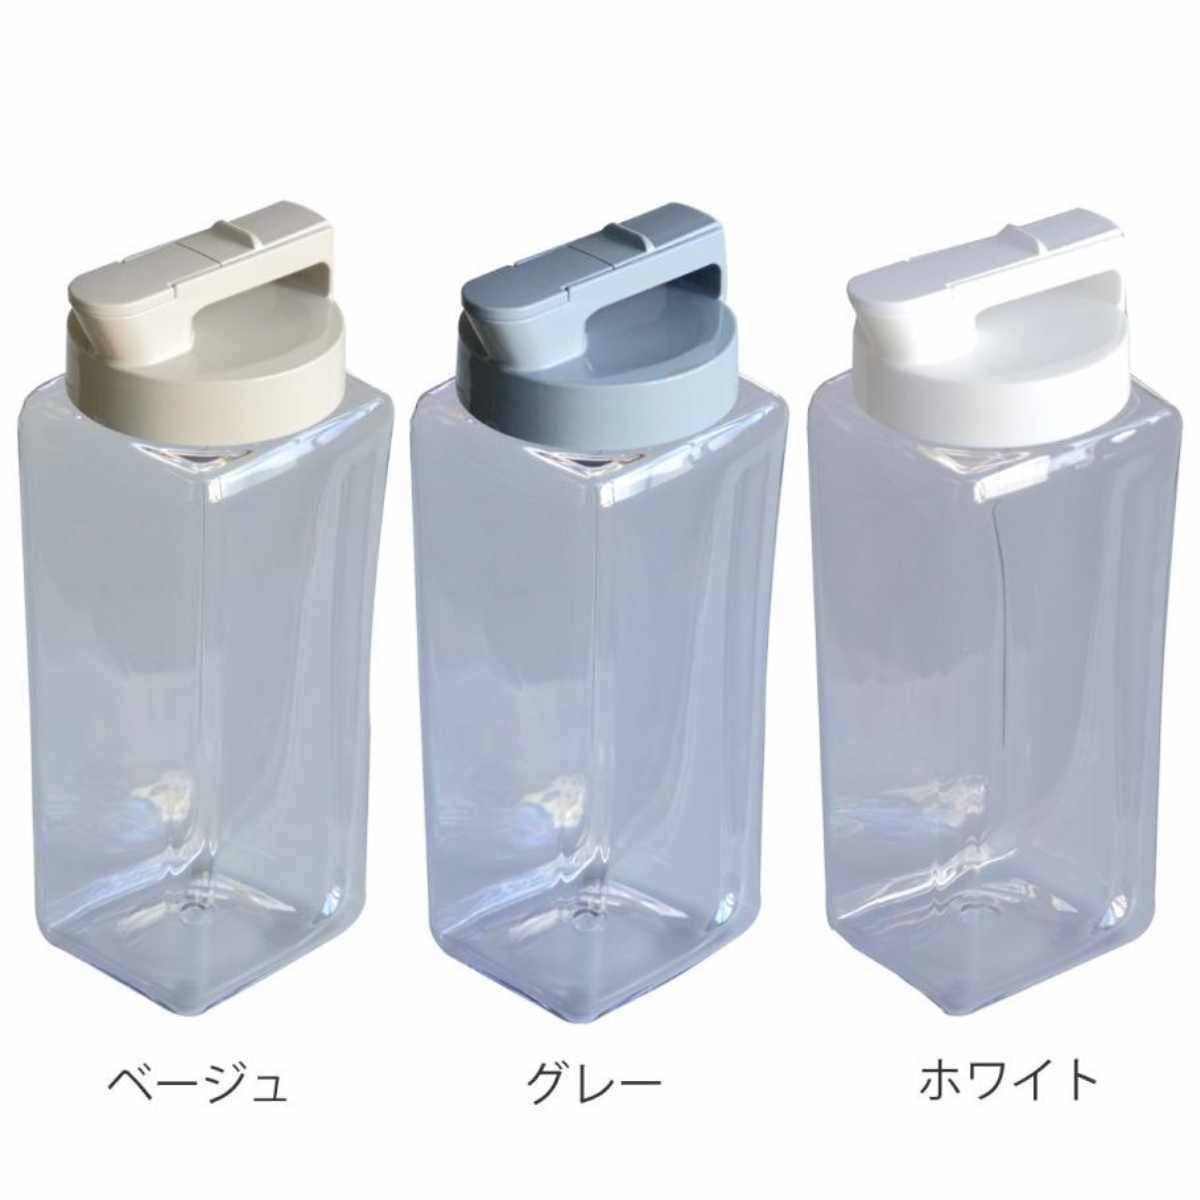 ピッチャー 冷水筒 2.1L 耐熱 横置き プラスチック K-1280 （ 冷水筒 麦茶ポット 水差し 水さし プラスチック製 縦 横 熱湯 広口 麦茶 冷水ポット 角型 お手入れ簡単 ） 3